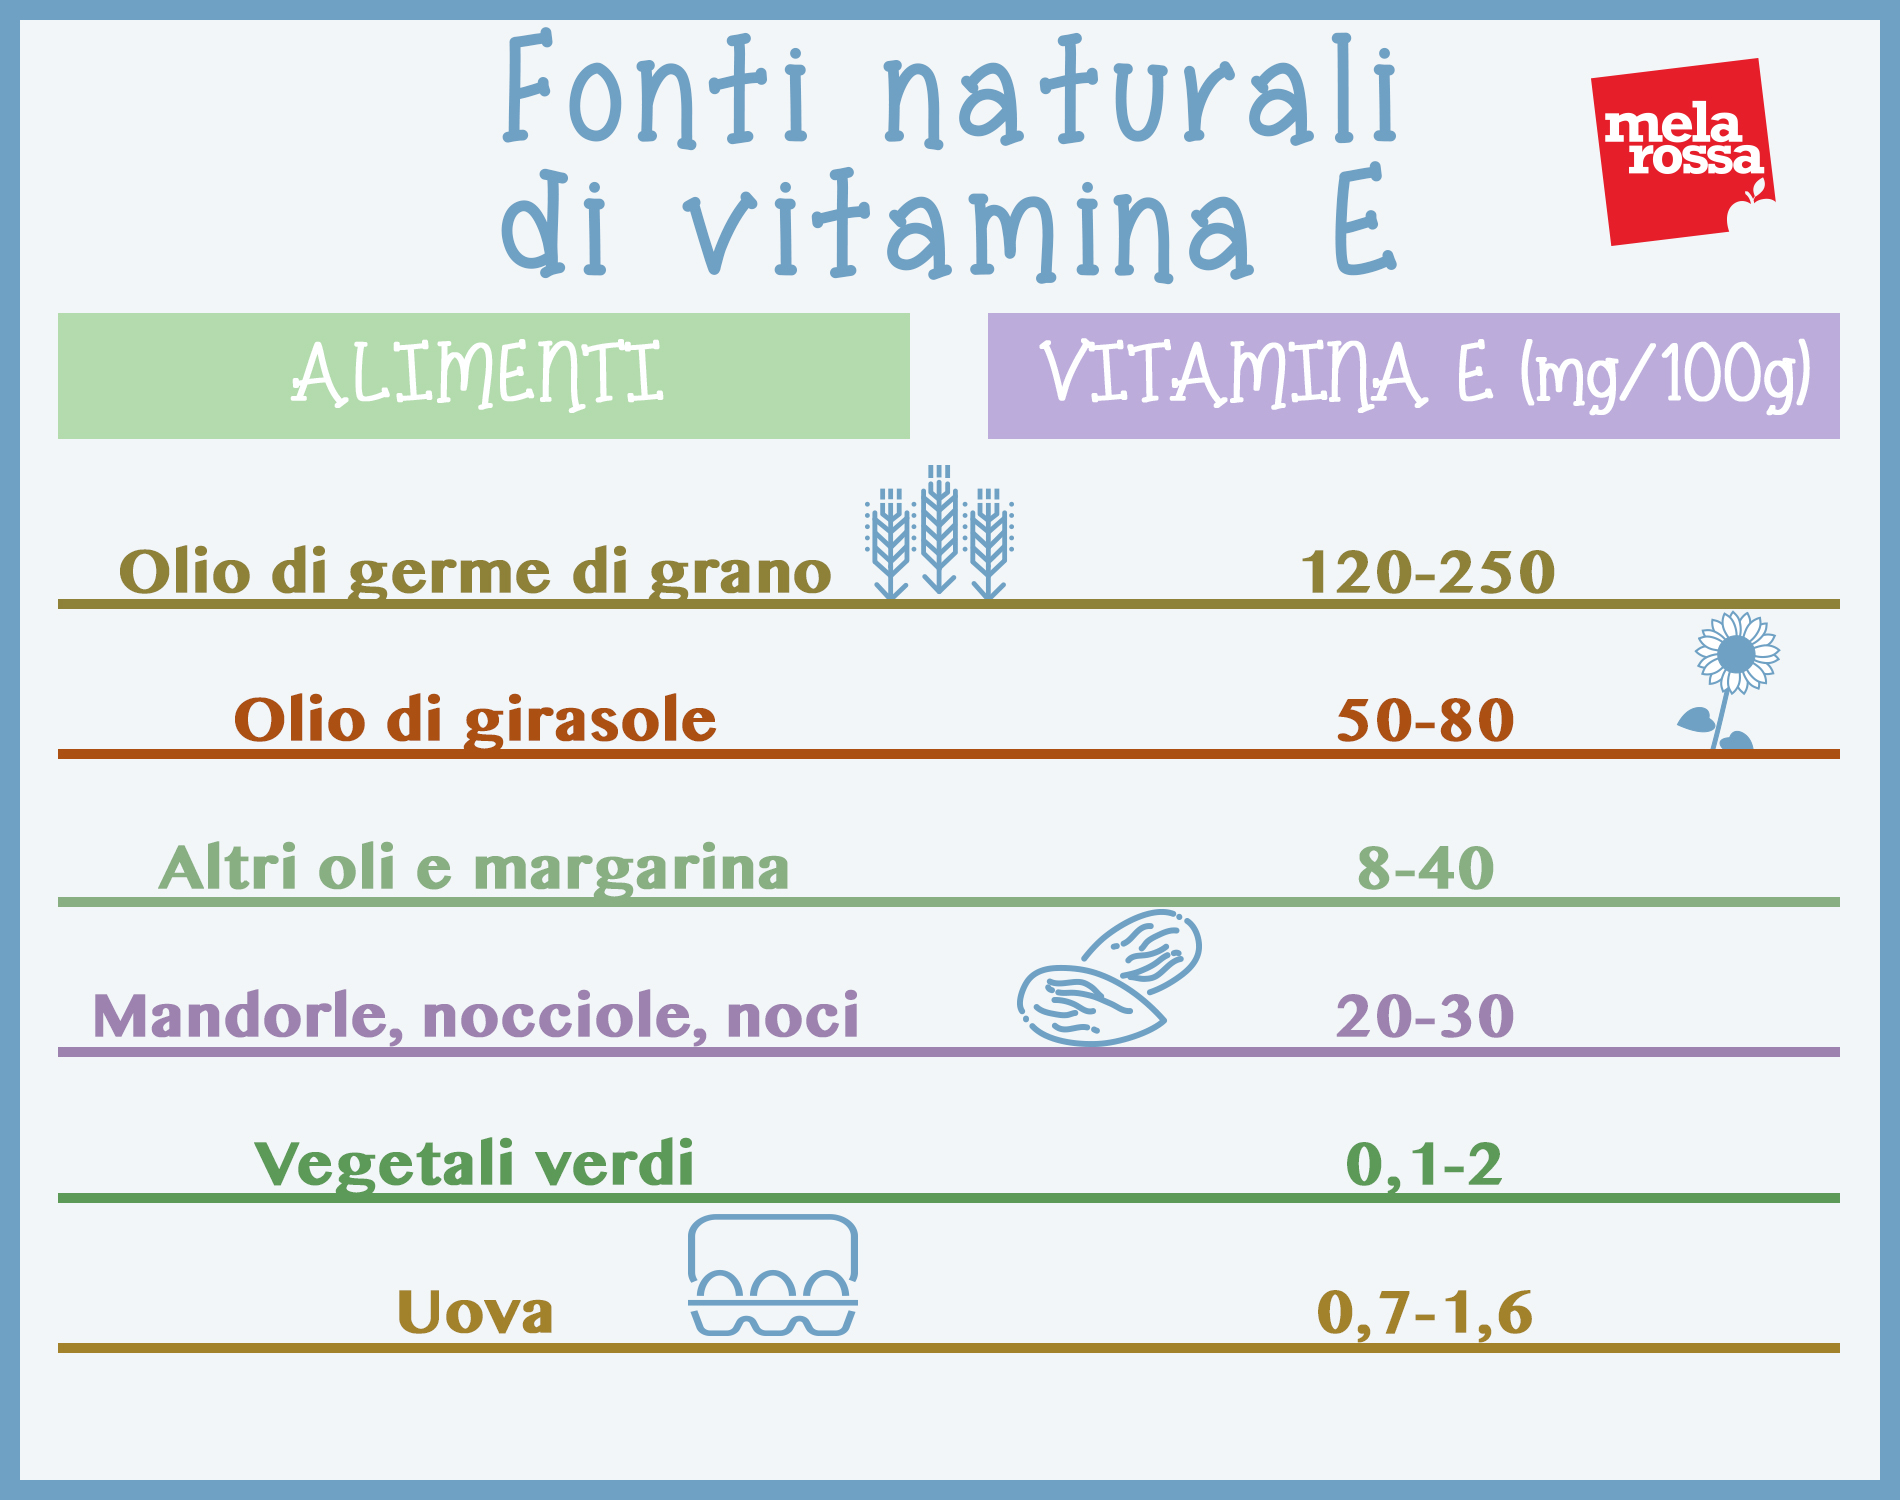 fonti naturali di vitamina E 